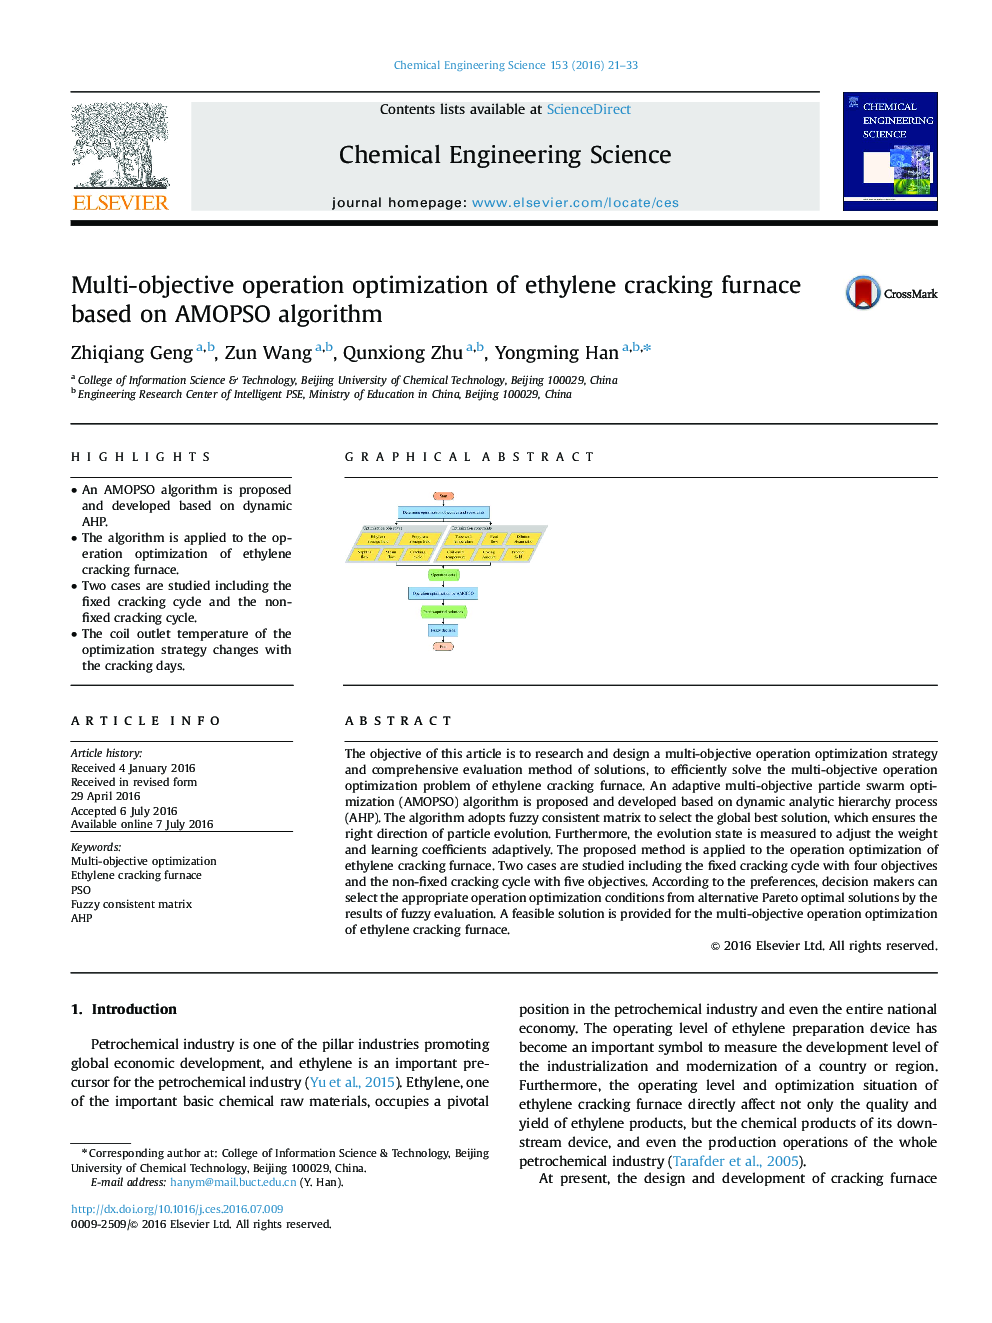 Multi-objective operation optimization of ethylene cracking furnace based on AMOPSO algorithm